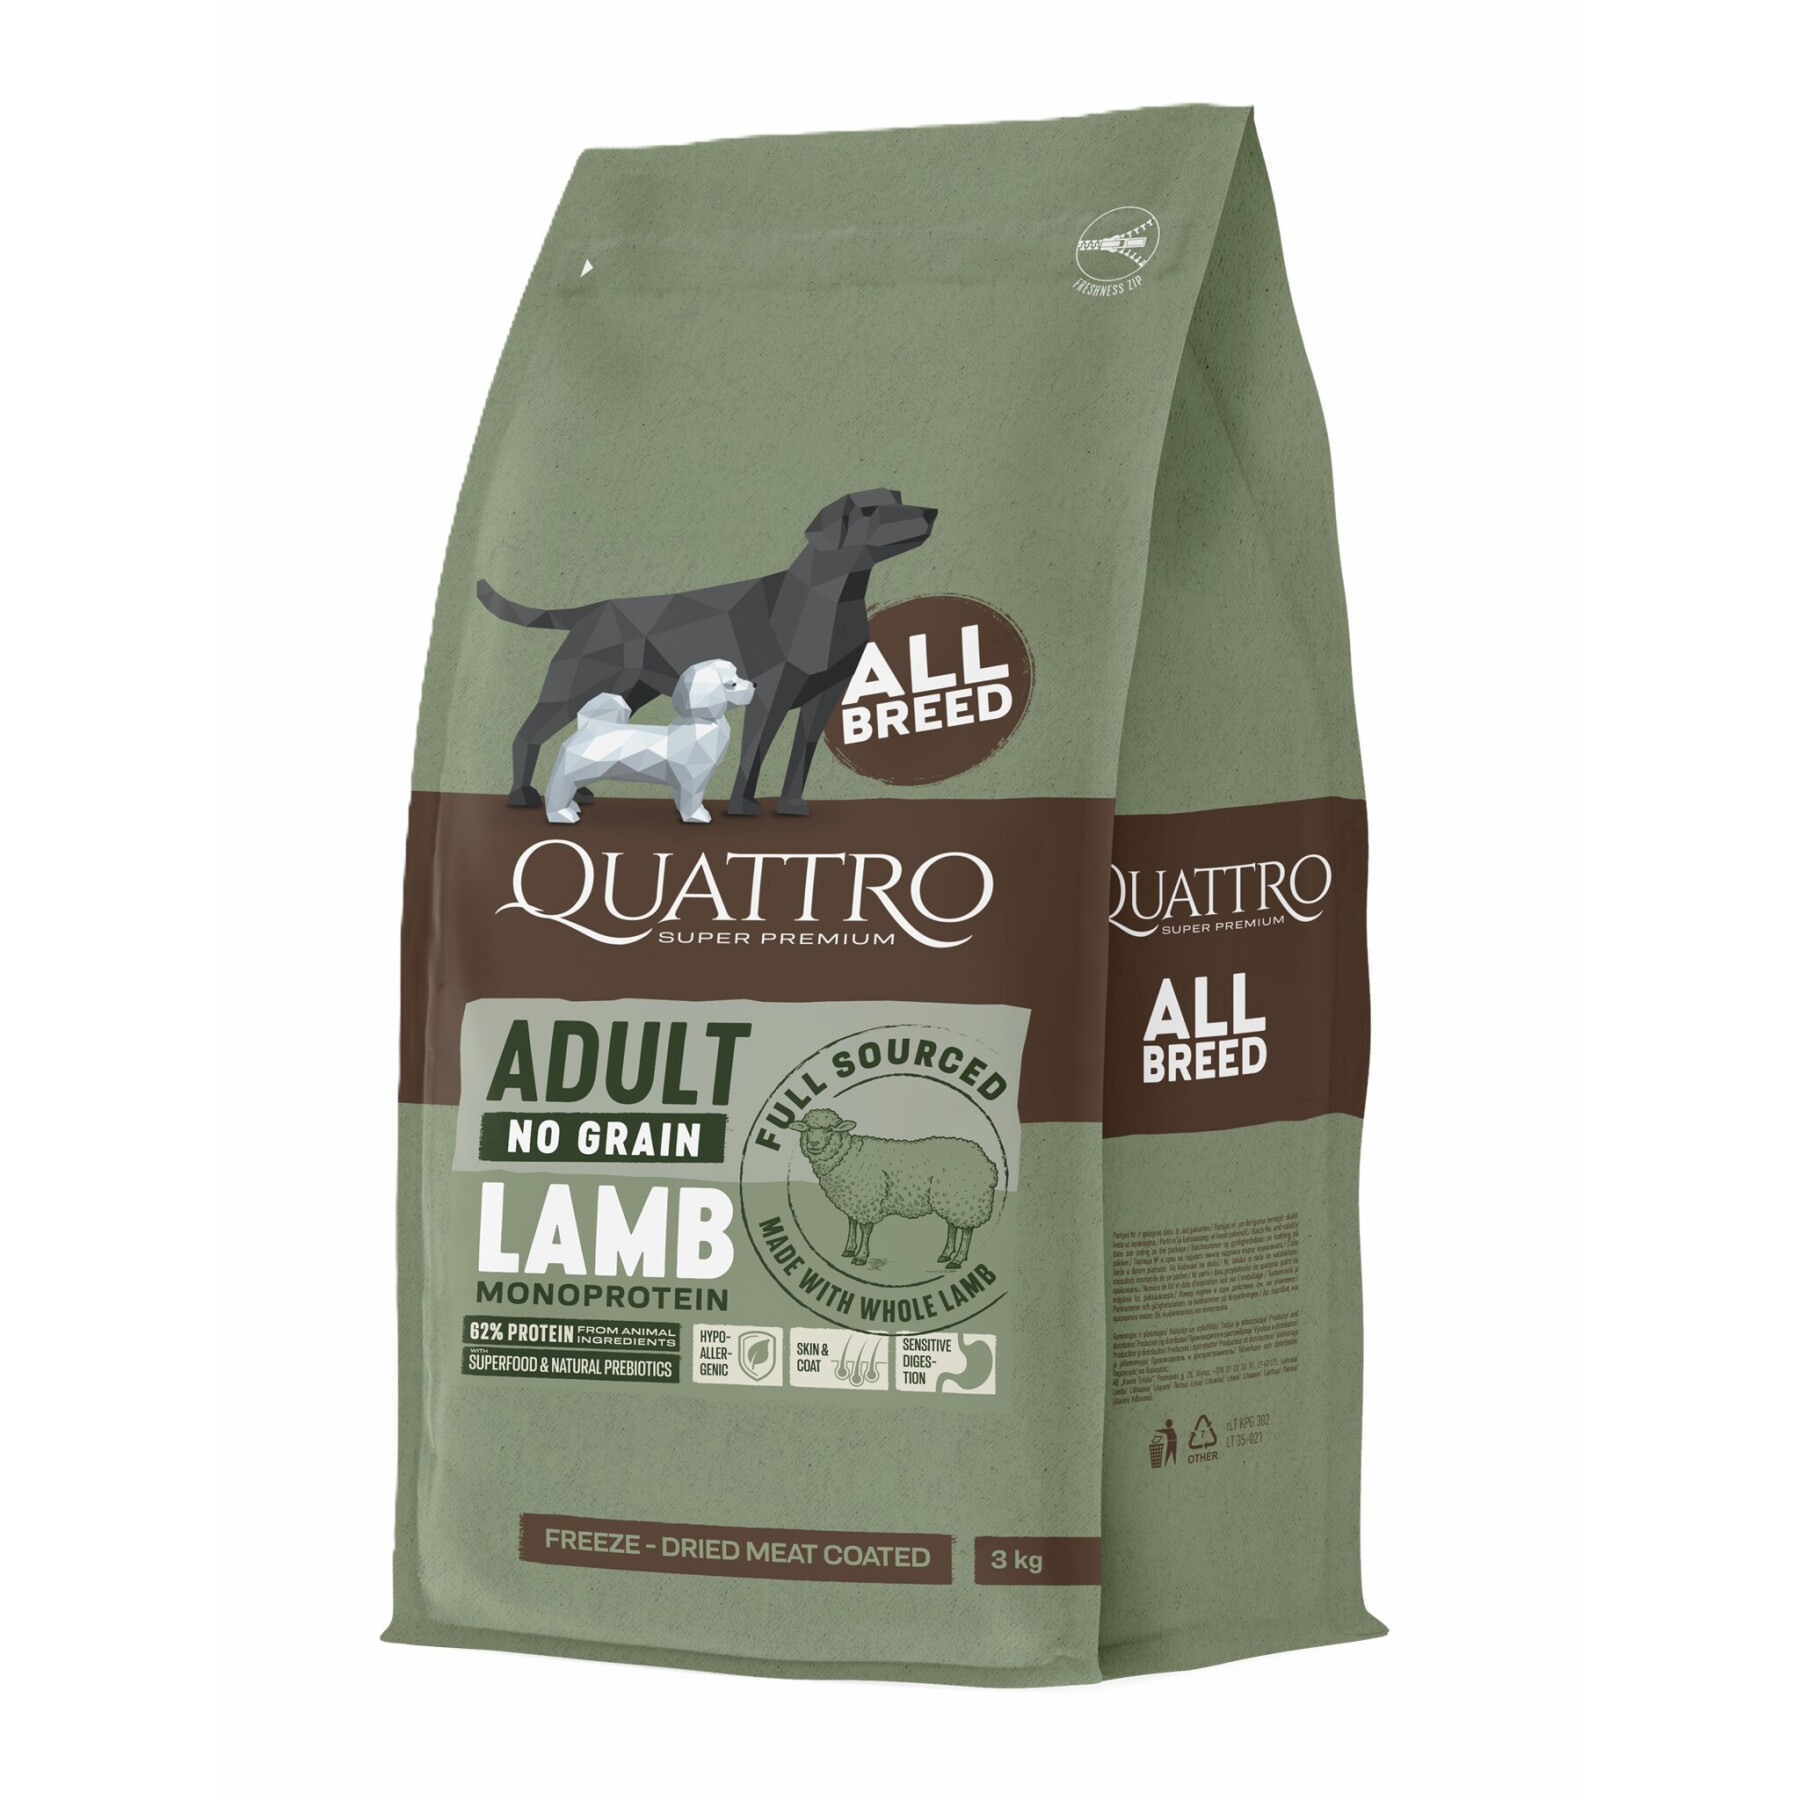 Grain-free dog food for all breeds lamb BUBU Pets Quatro Super Premium